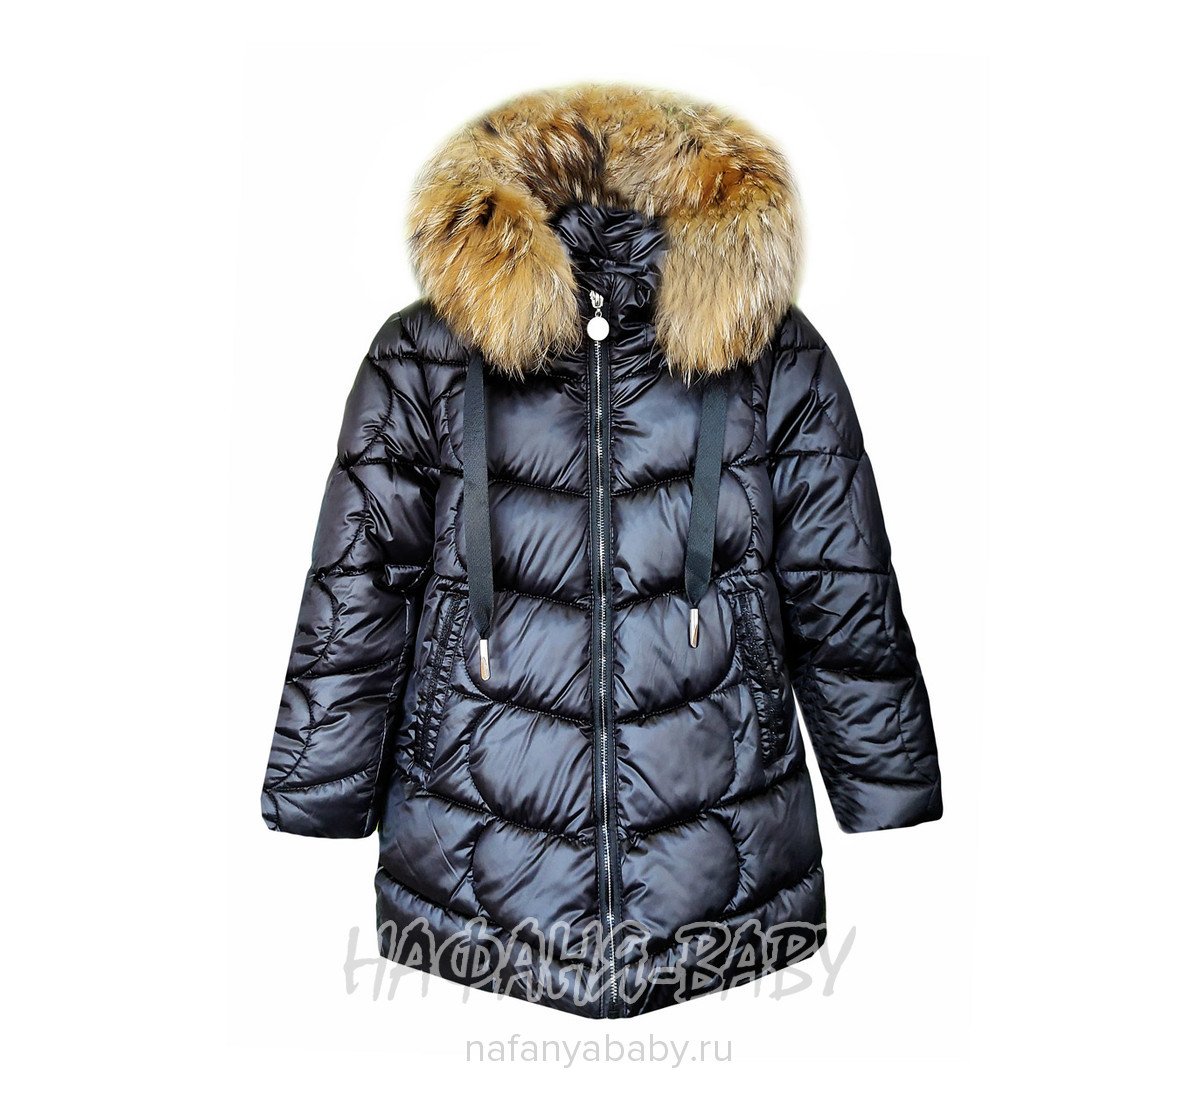 Зимнее пальто для девочки DELFIN-FREE арт: 2122, 5-9 лет, оптом Китай (Пекин)